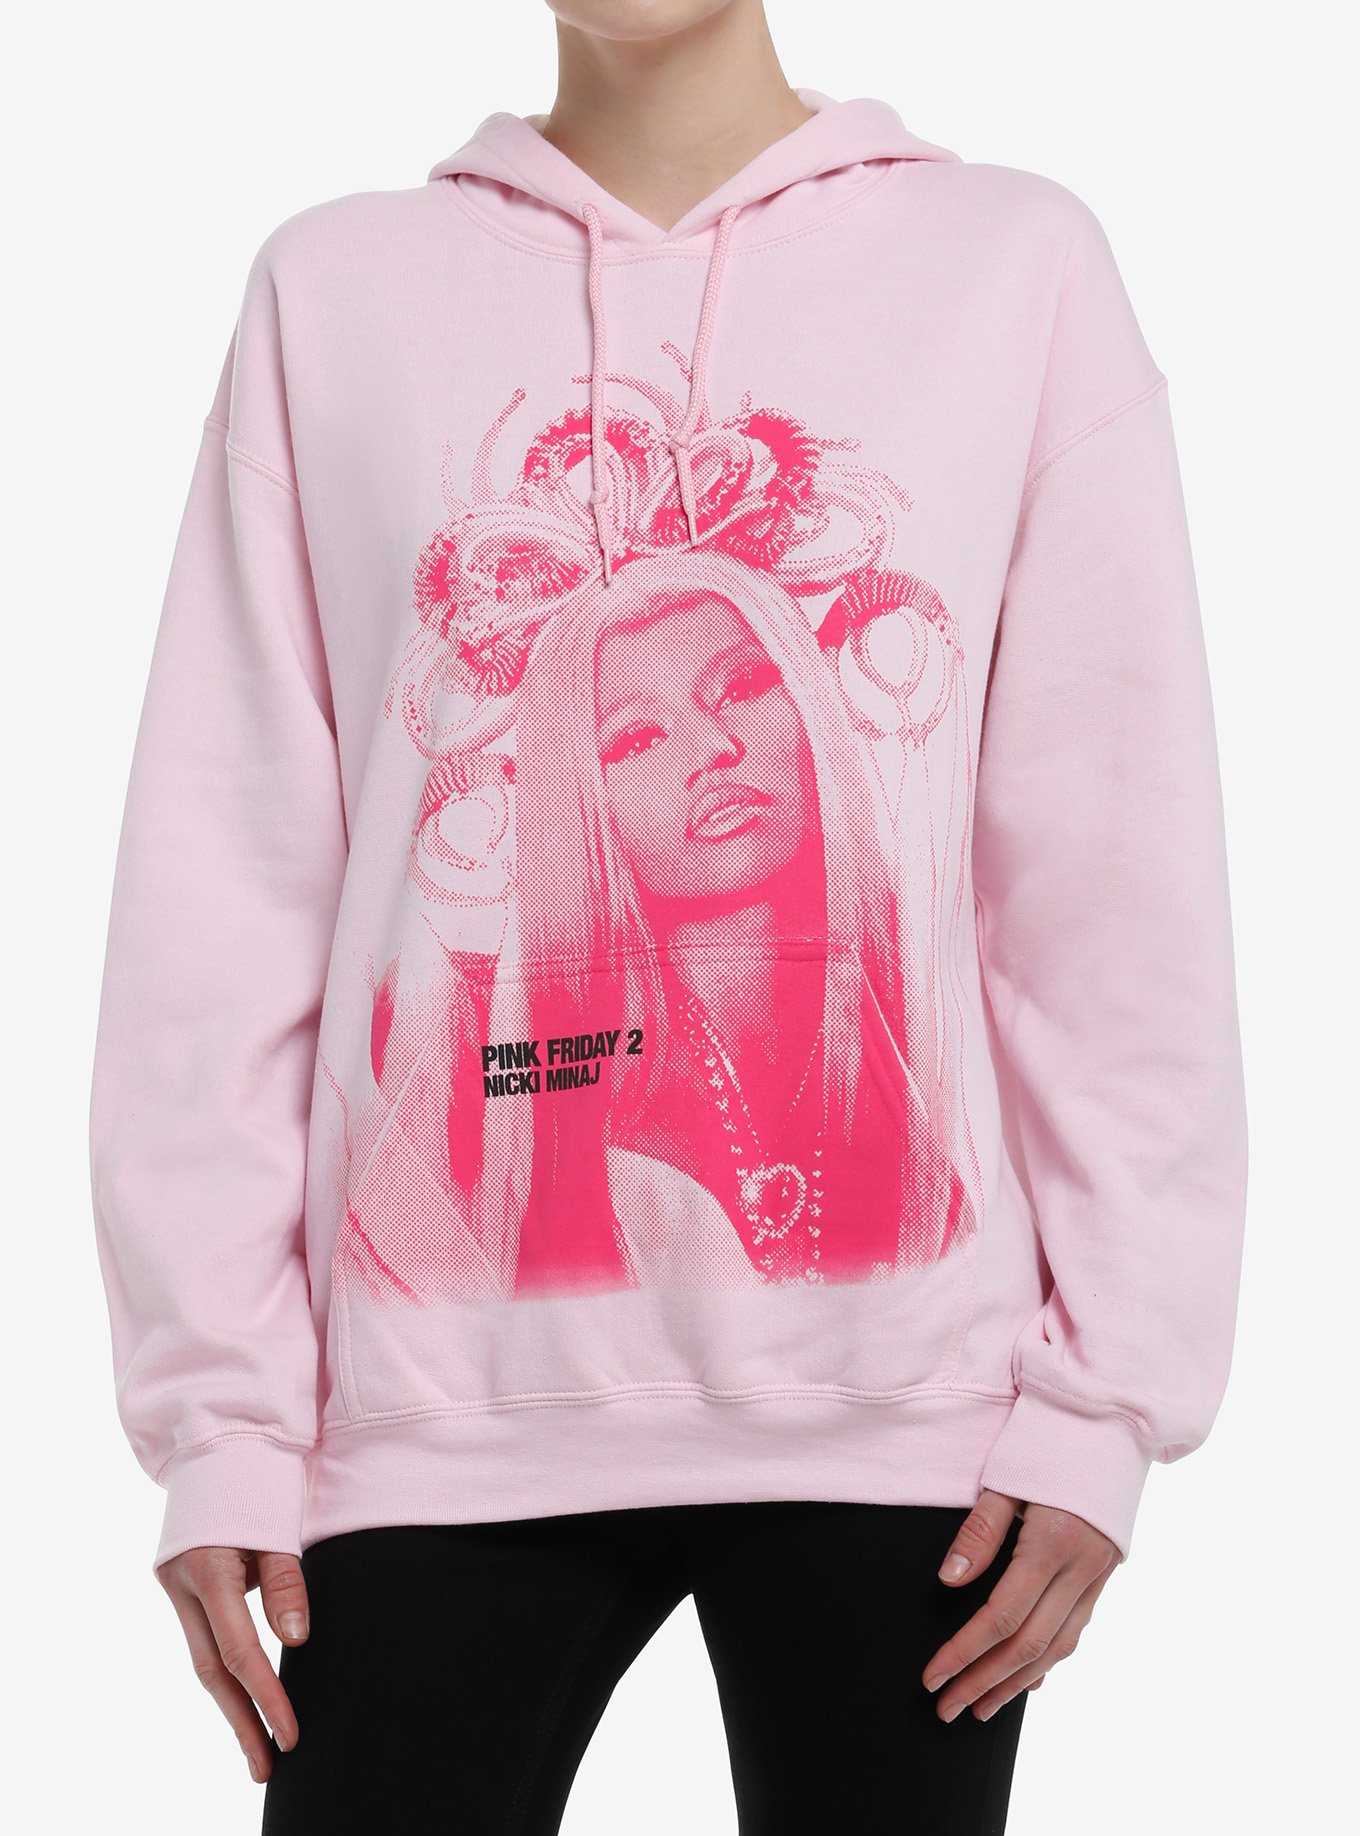 Nicki Minaj Pink Friday 2 Jumbo Graphic Girls Hoodie, , hi-res